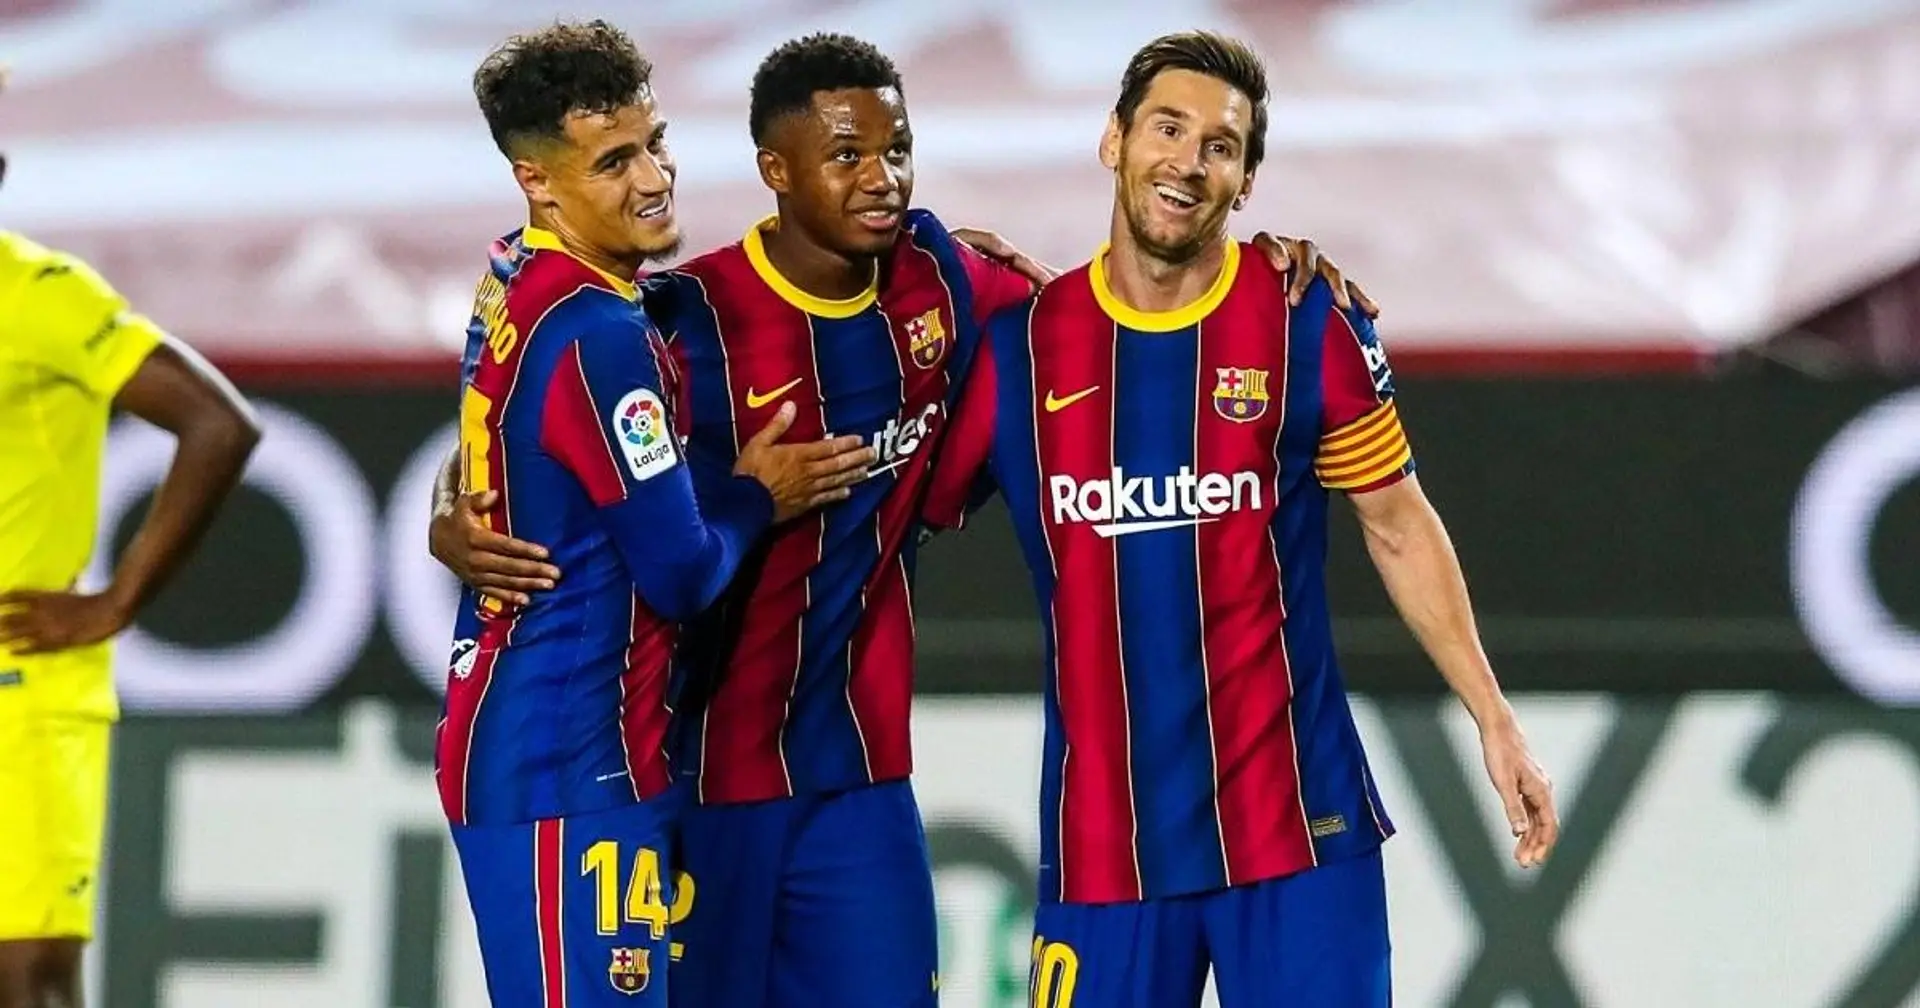 Pourquoi le Camp Nou est la véritable forteresse du Barca en Ligue des champions, décomposé en 30 secondes